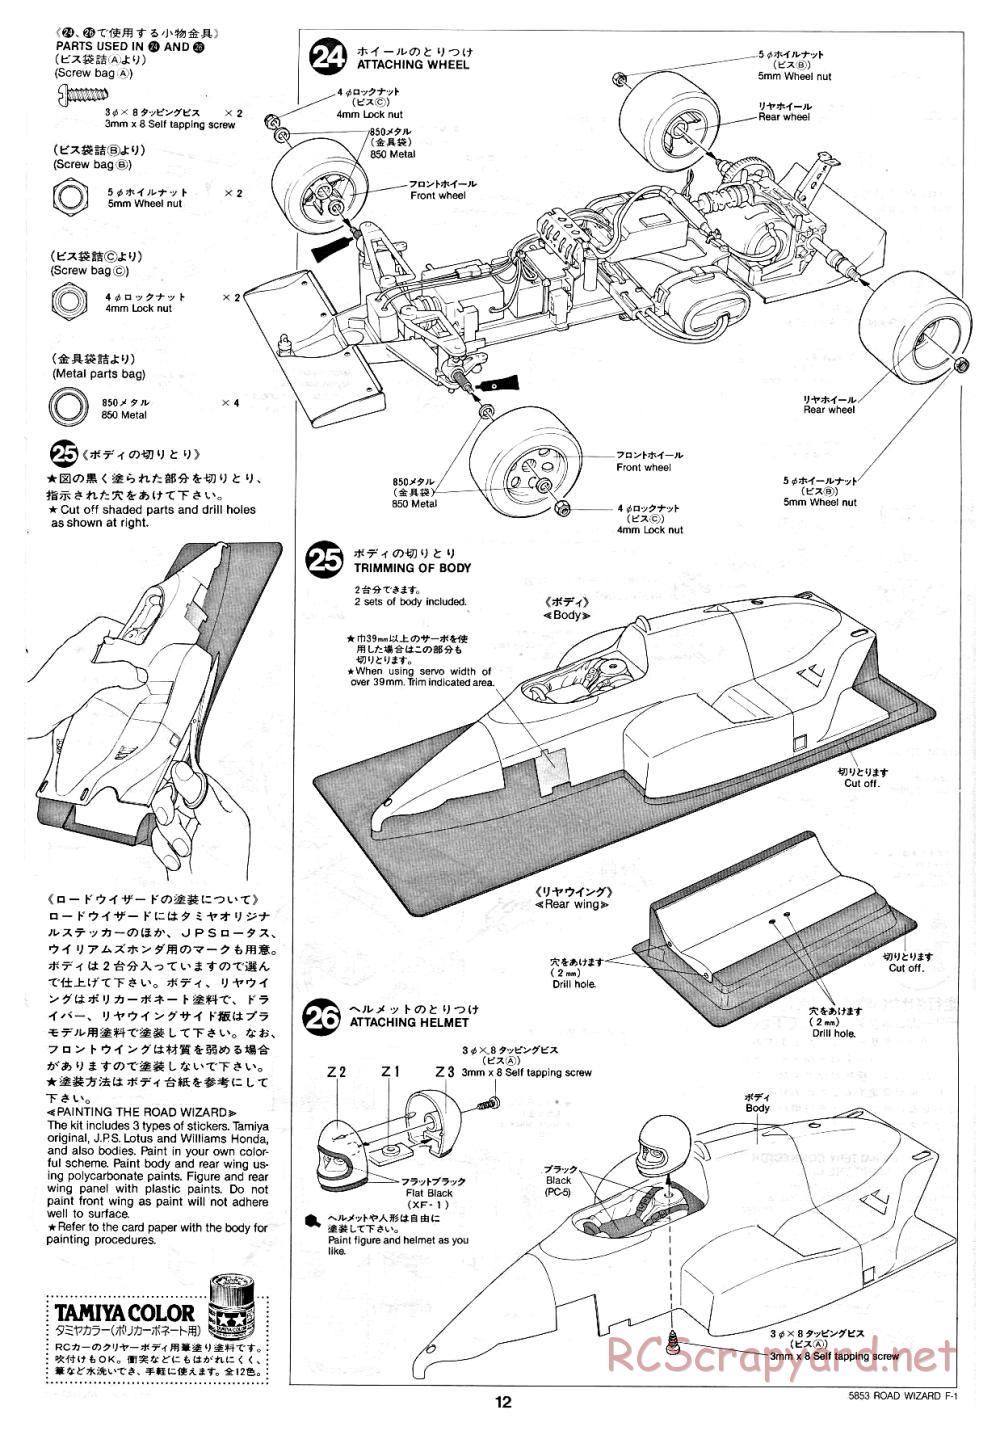 Tamiya - Road Wizard F-1 - 58053 - Manual - Page 12